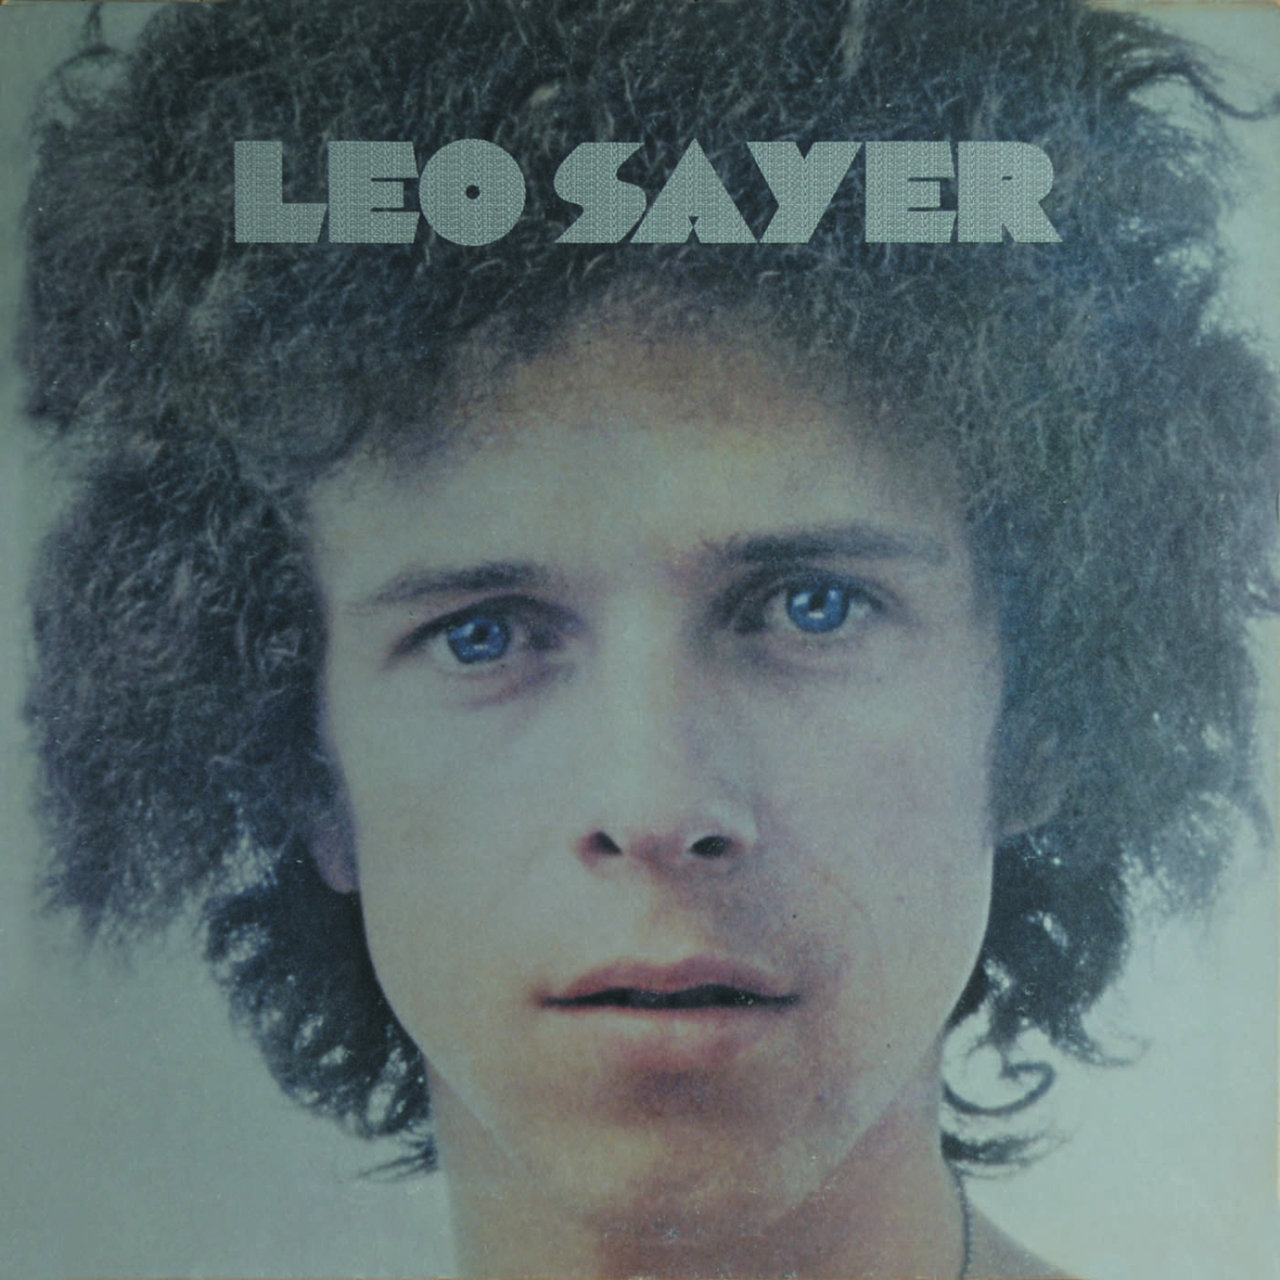 Leo Sayer - Silverbird [1974]